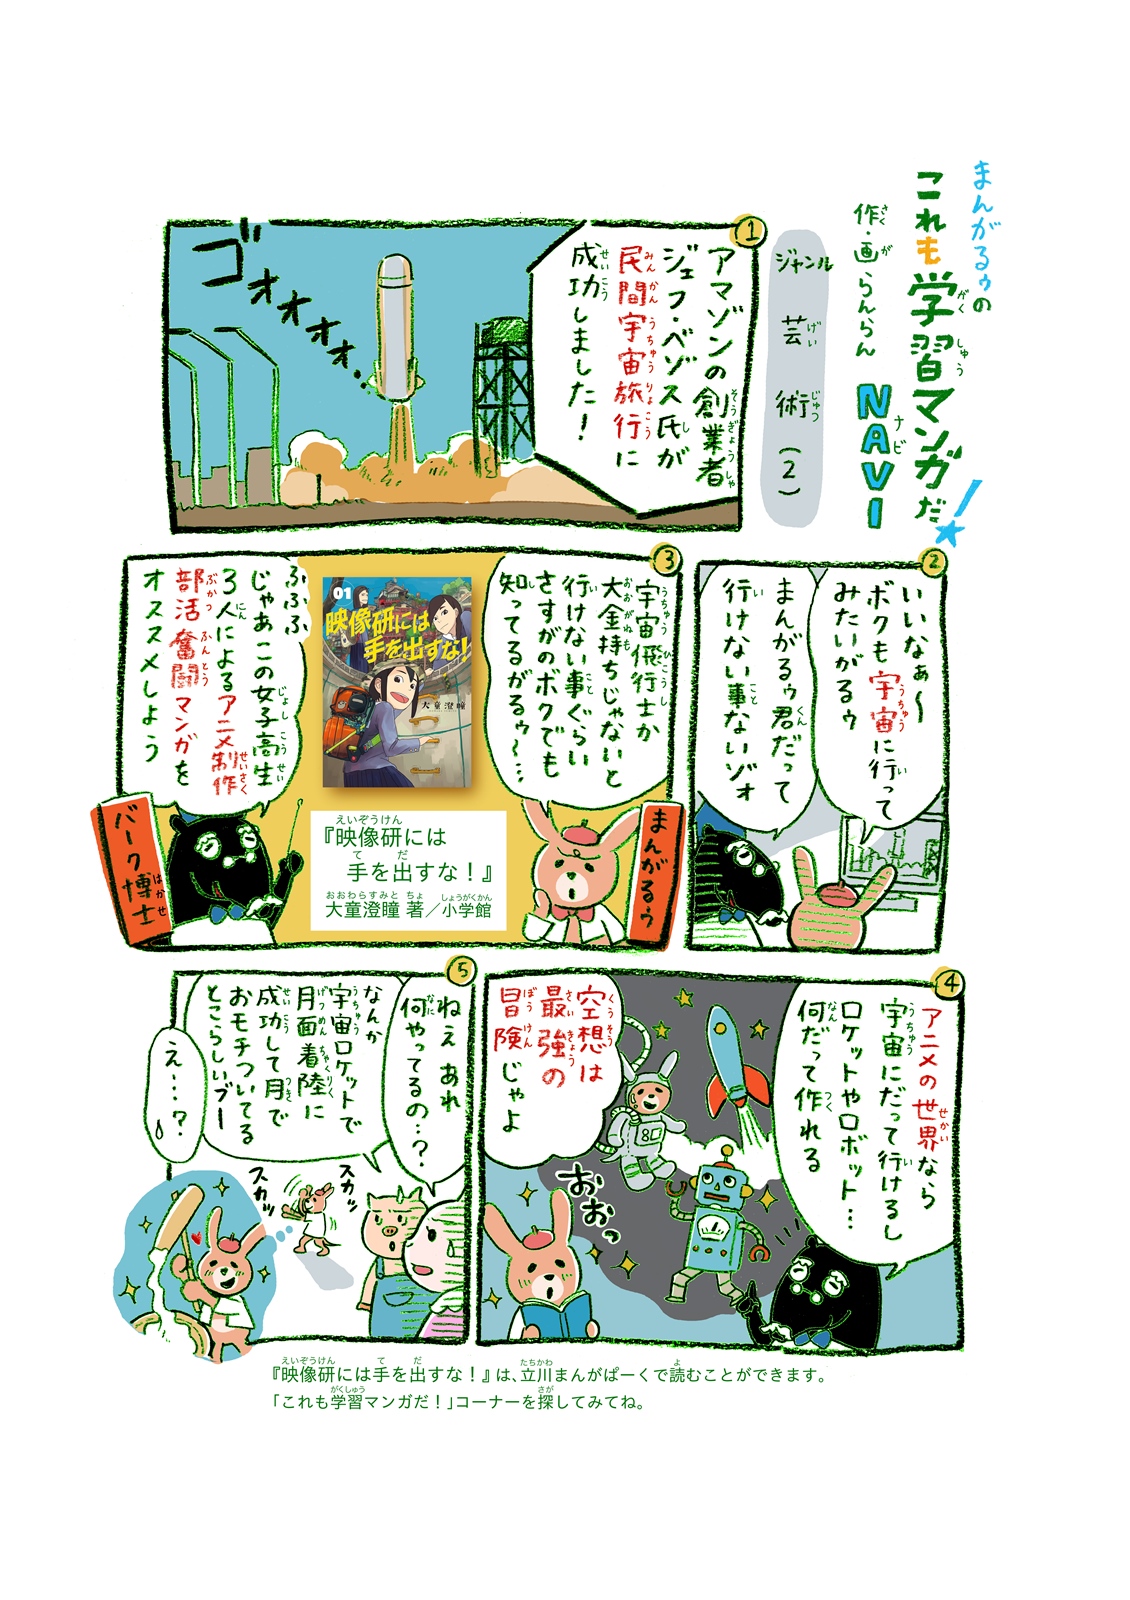 https://mangapark.jp/topics/2021/10/30/images/mangaroo_vol25.jpg